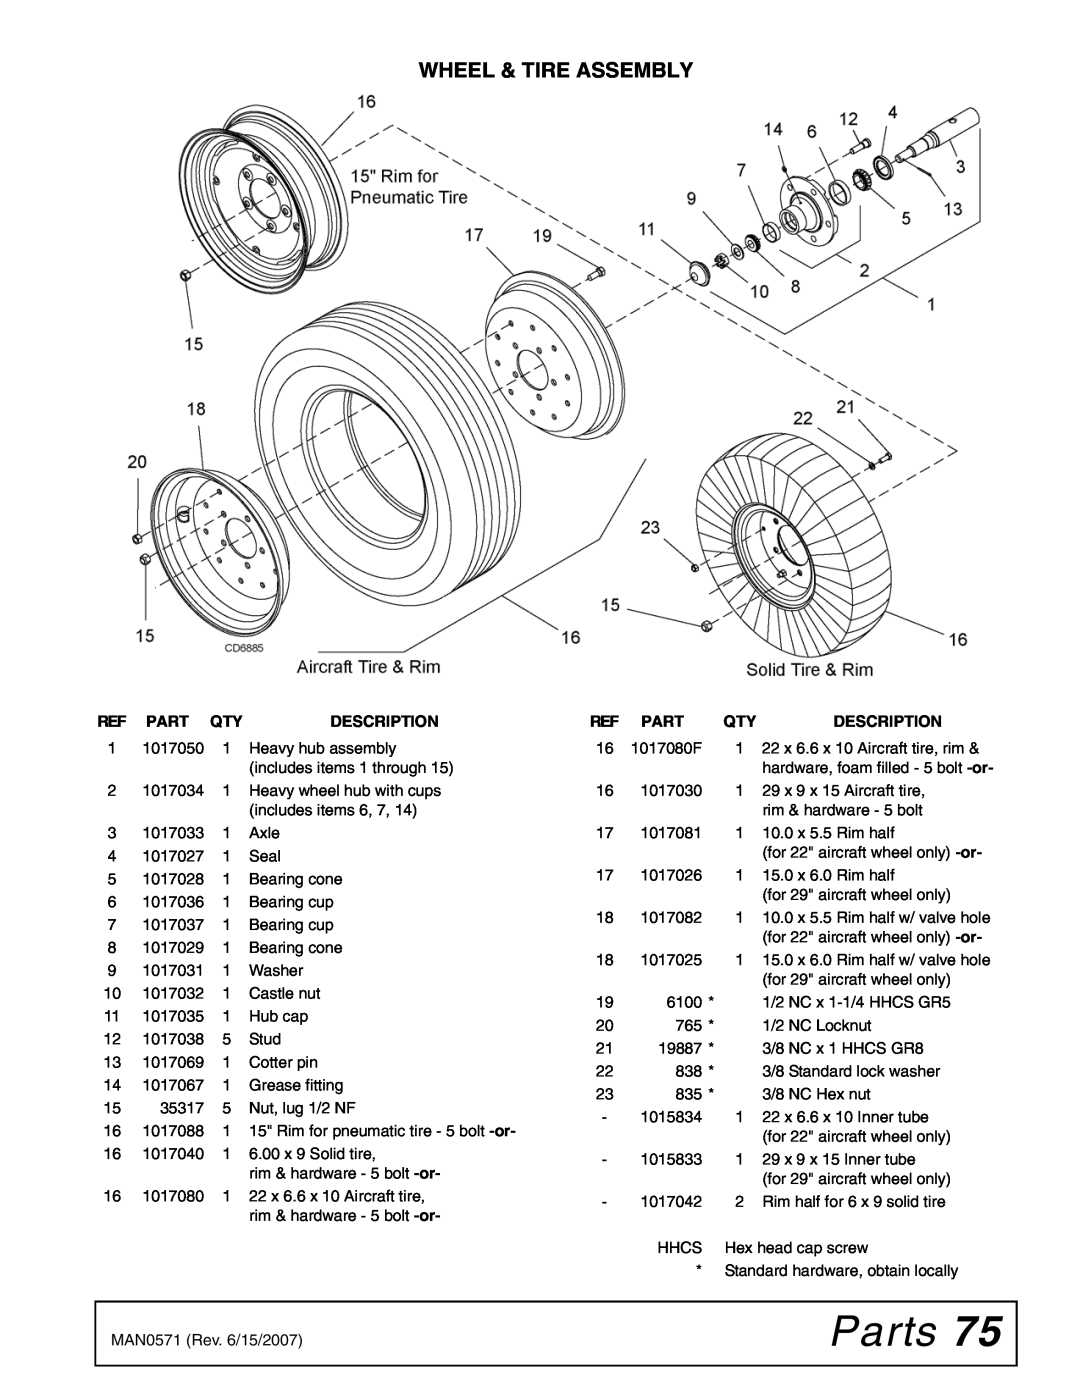 Woods Equipment DS1440Q, DSO1260Q, DS1260Q manual Parts, Wheel & Tire Assembly, Ref Part Qty, Description 